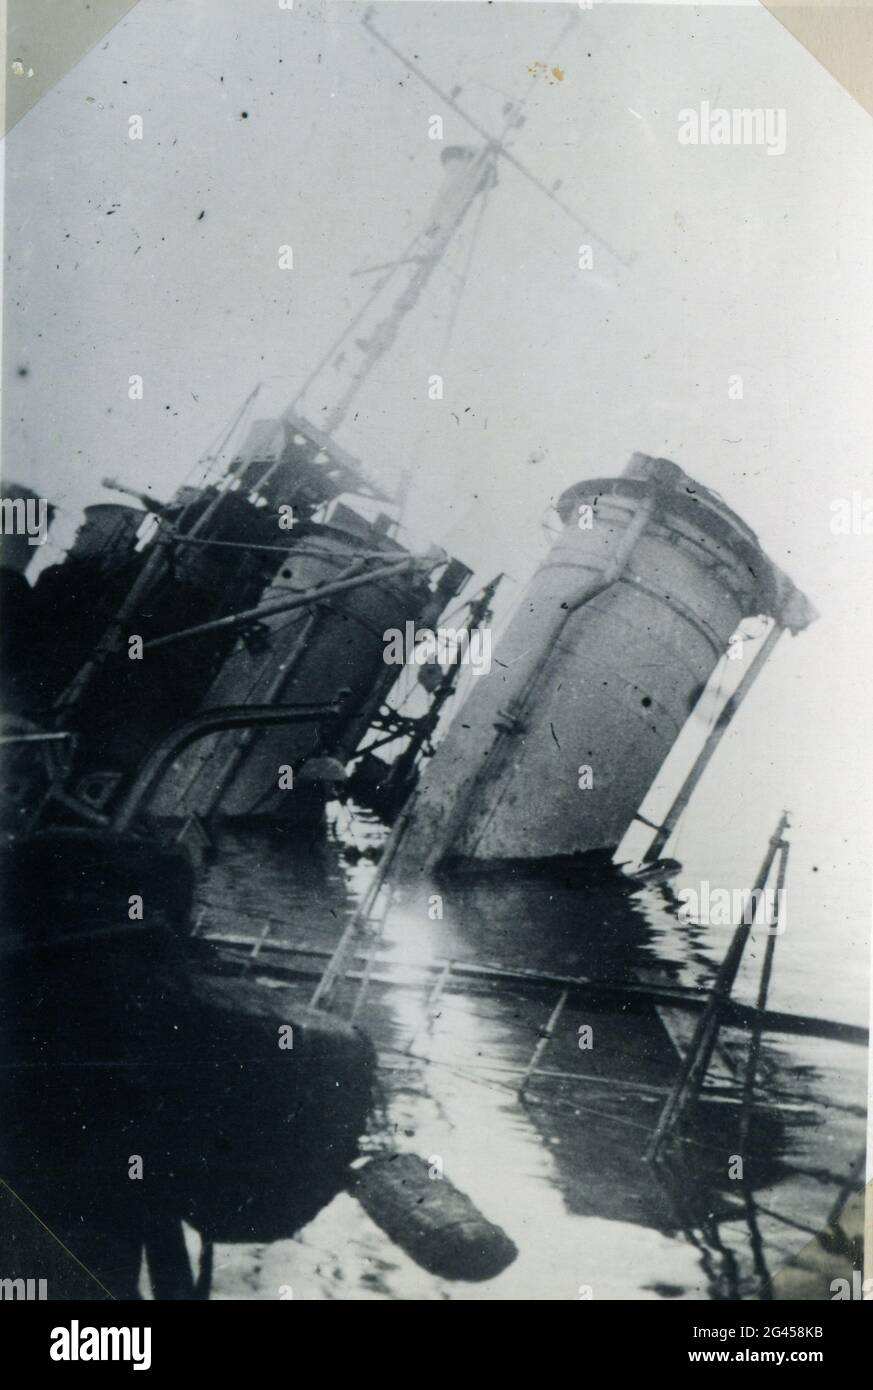 Événements : Seconde Guerre mondiale / Seconde Guerre mondiale, France, scutling de la flotte française à Toulon, 27.11.1942, navires de guerre endommagés Banque D'Images